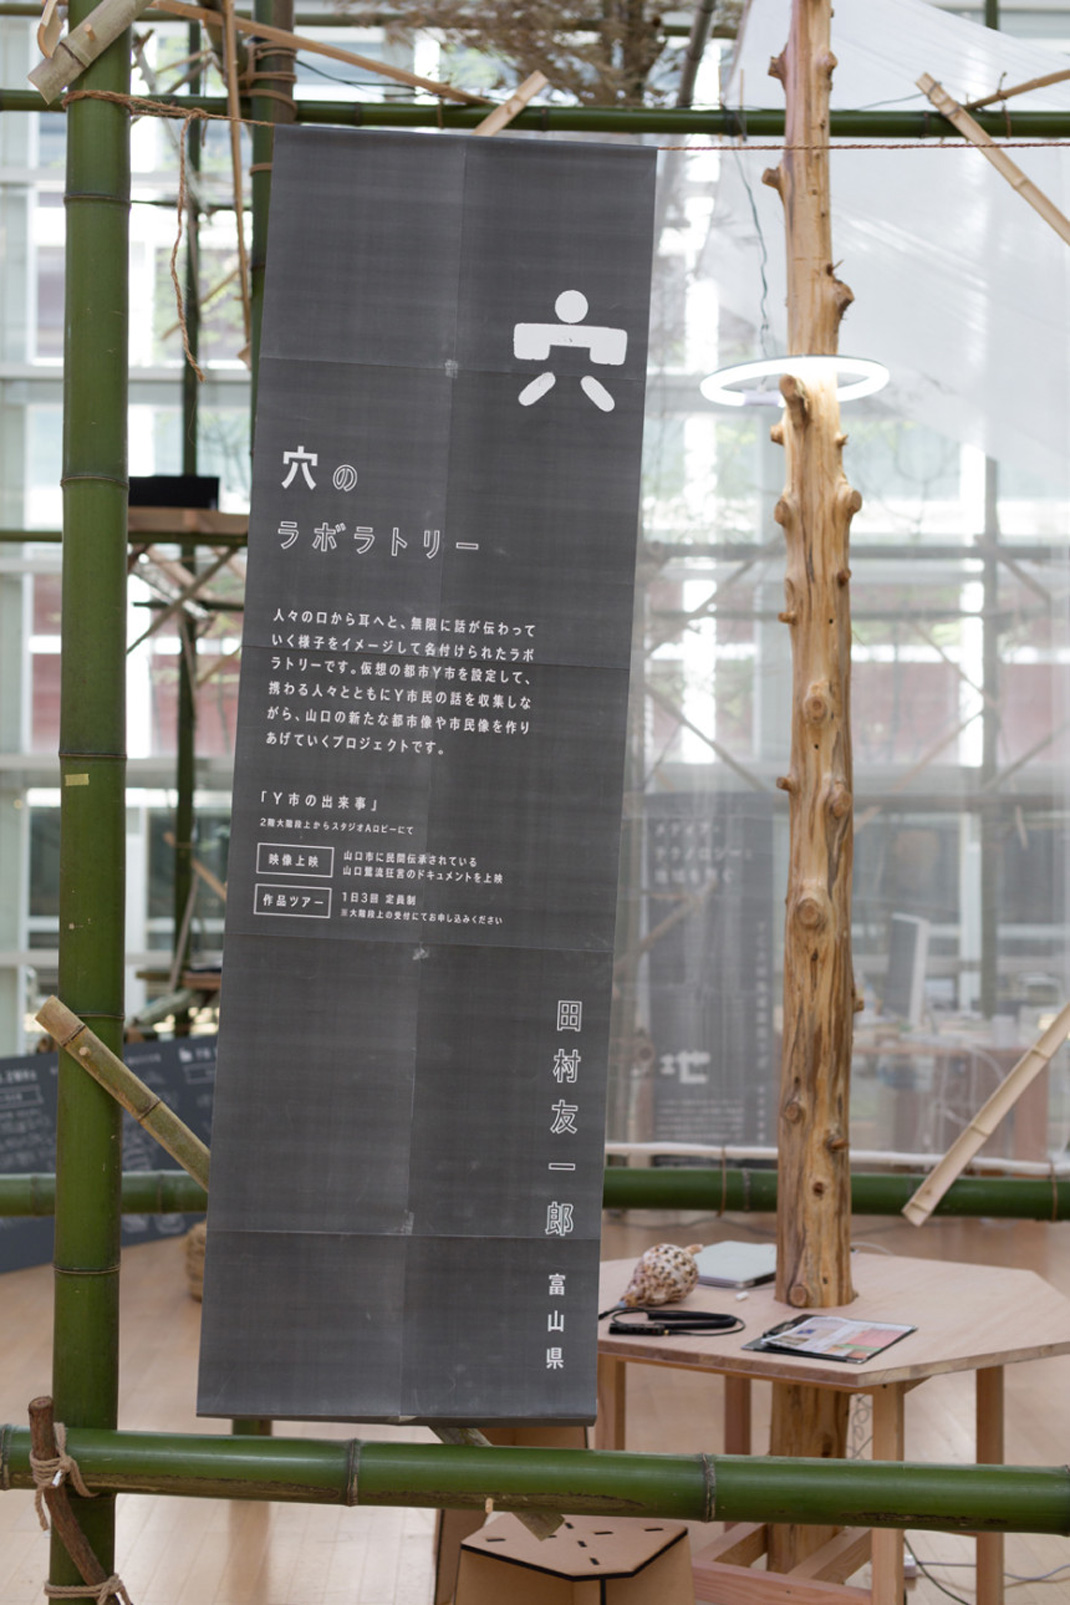 UMA  设计农场展 明天是今天 耕种可能的田地 餐厅LOGO VI空间设计 全球餐饮研究所 视觉餐饮 深圳 武汉 杭州 上海 广州 北京